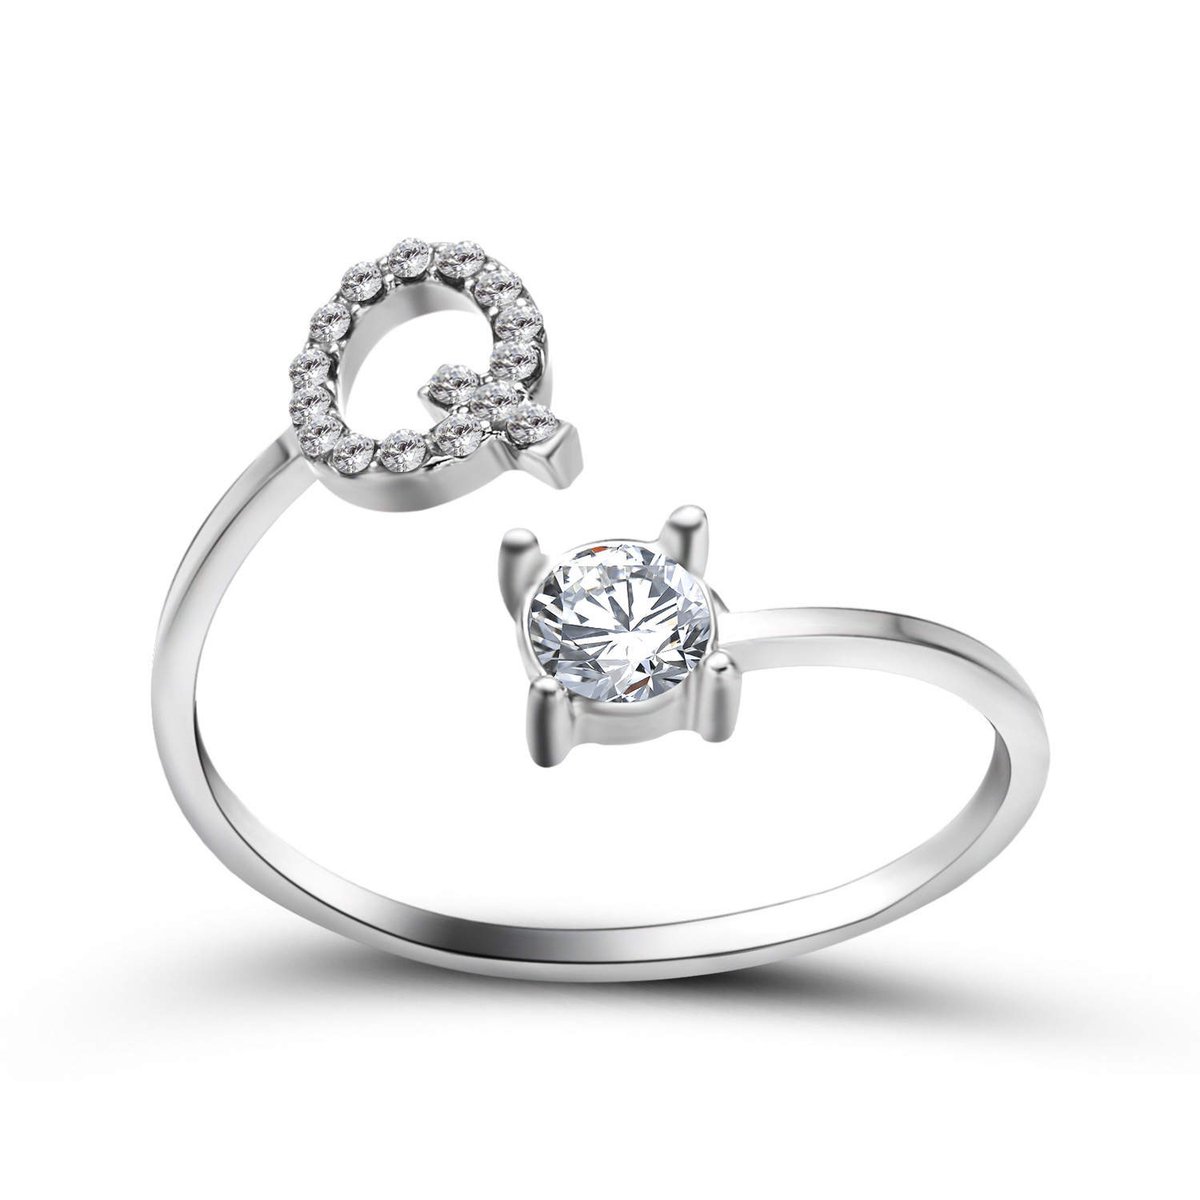 Ring met letter Q - Ring met steen - Aanschuifring - Zilver kleurig - Ring Zilver dames - Cadeau voor vriendin - Vrouw - Sieraad meisje - Mooie ring tieners - Alfabet ring Q - Ring met initiaal